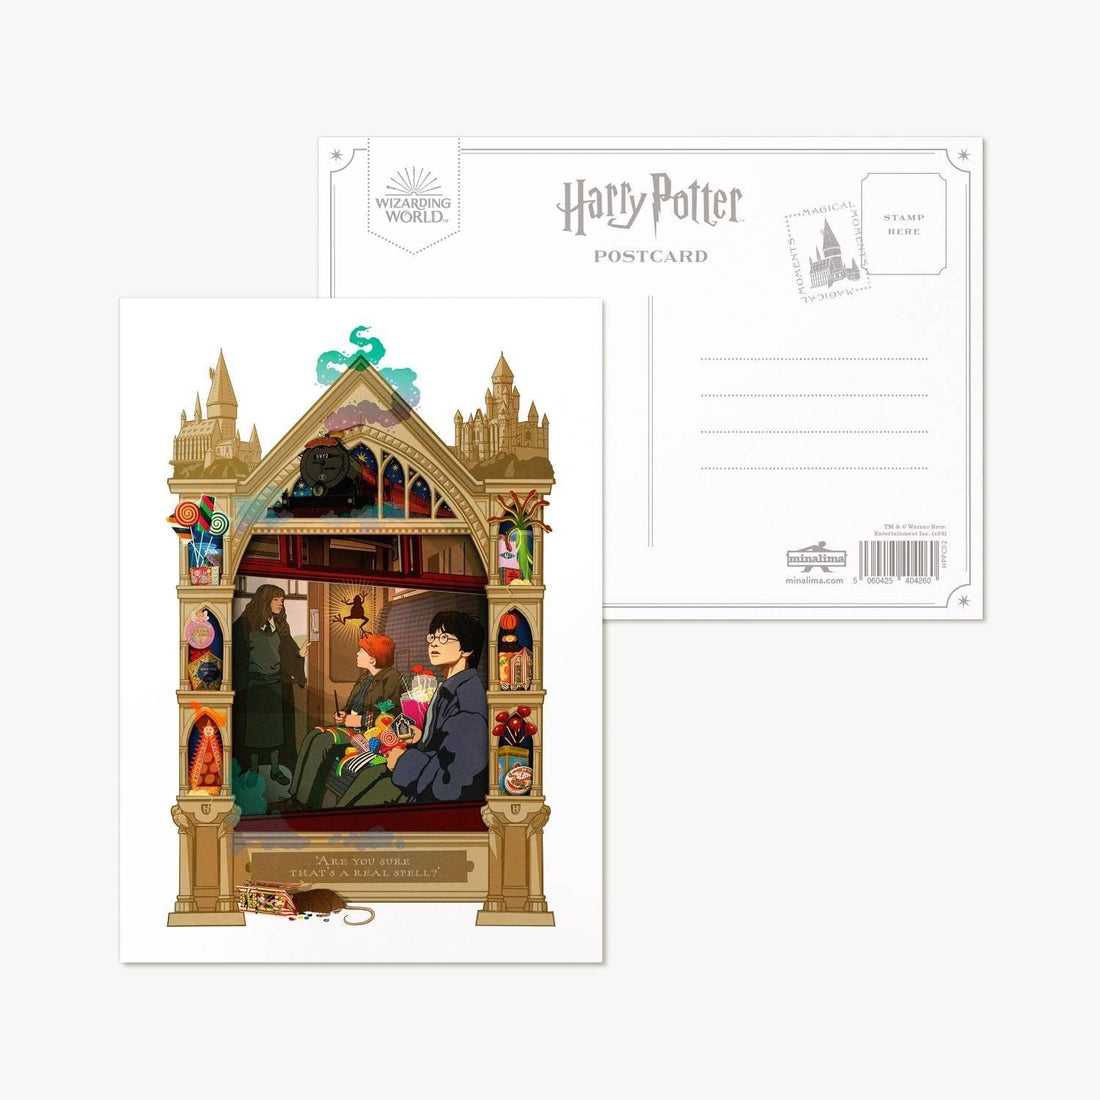 Carte postale Harry Potter illustrée par MinaLima - "Are you sure that's a real spell?" - La Muchette